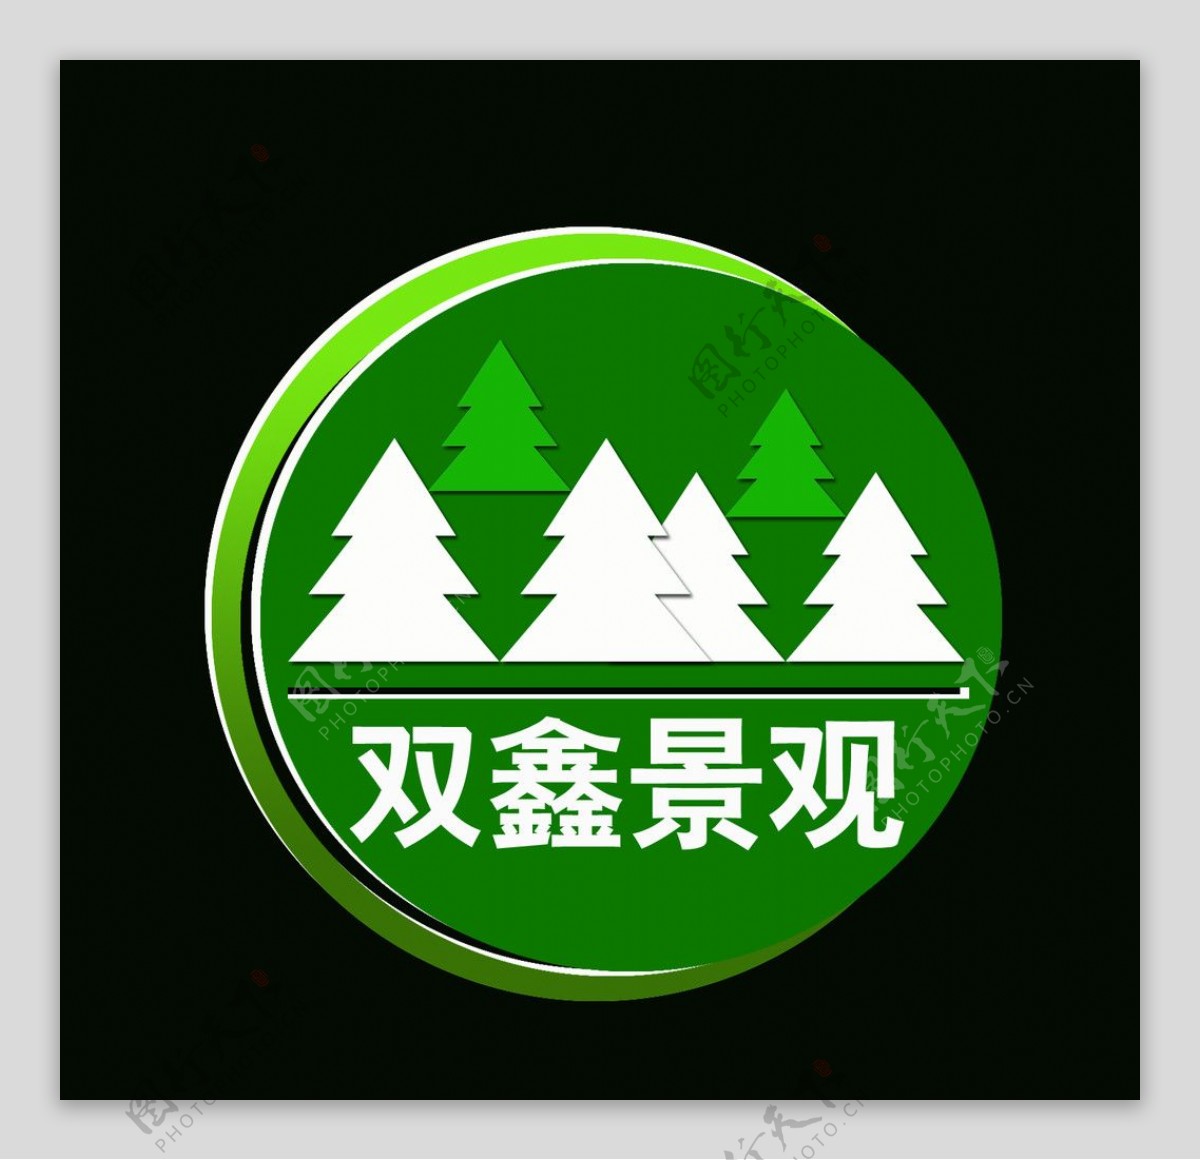 园林绿化标志LOGO图片